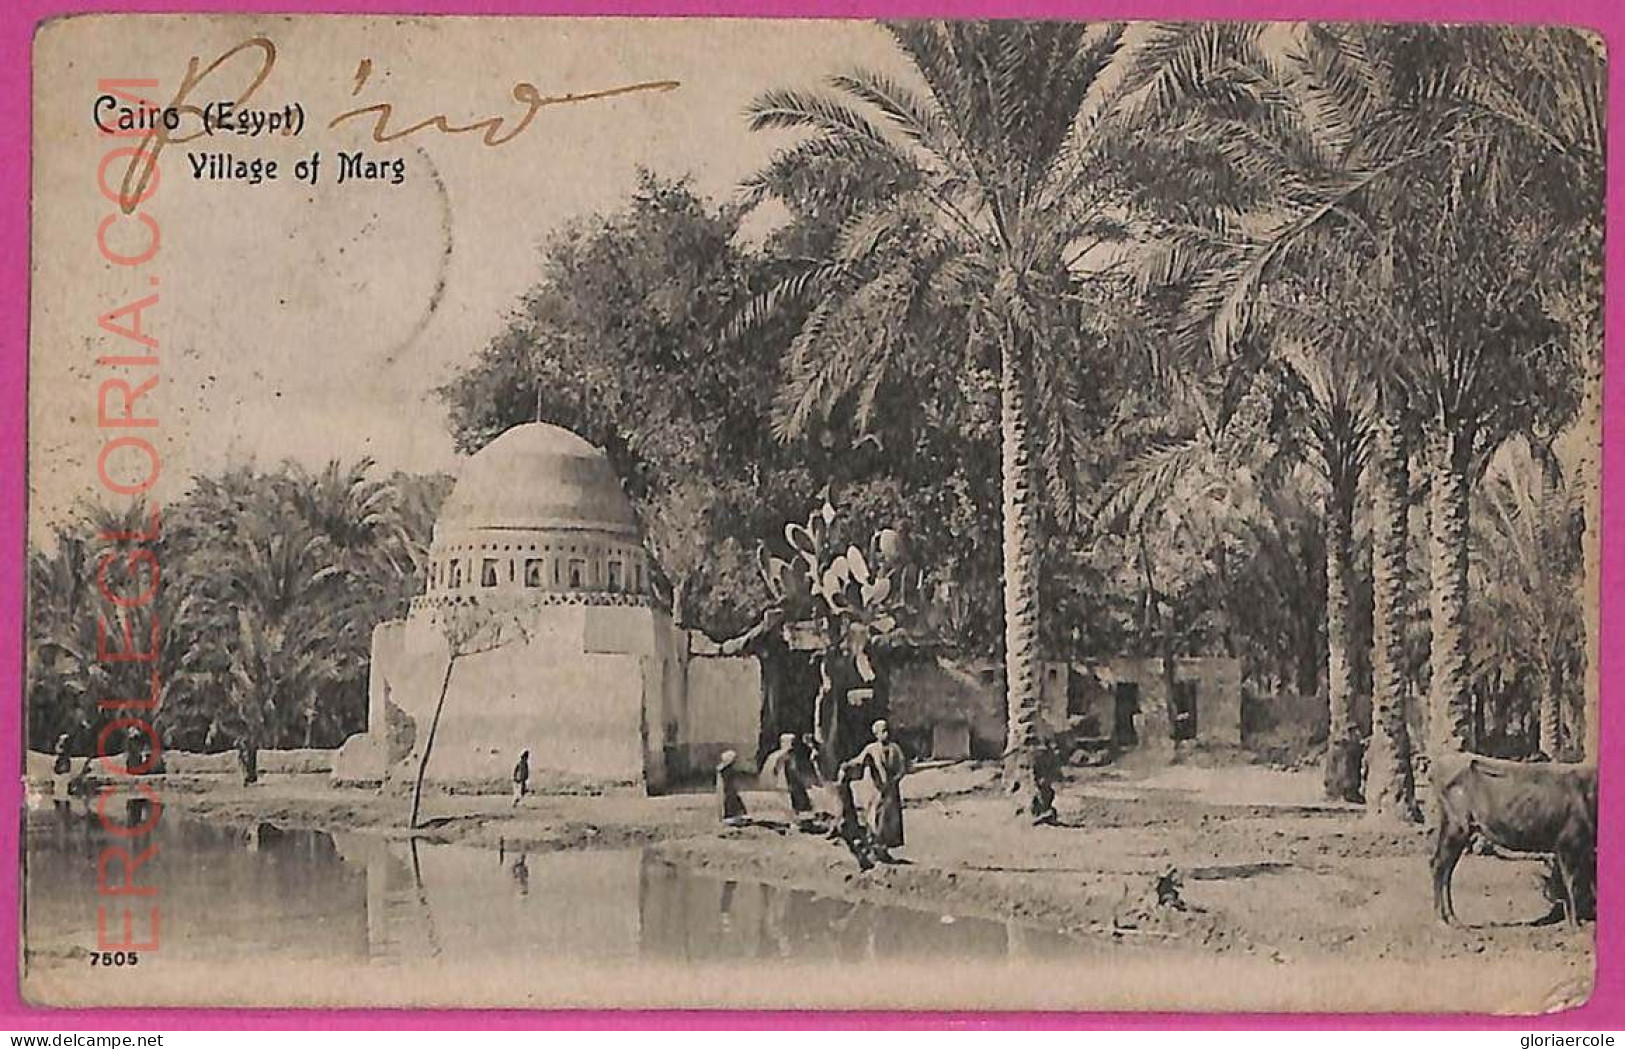 Ag3031 - EGYPT - VINTAGE POSTCARD - Cairo - 1905 - Kairo